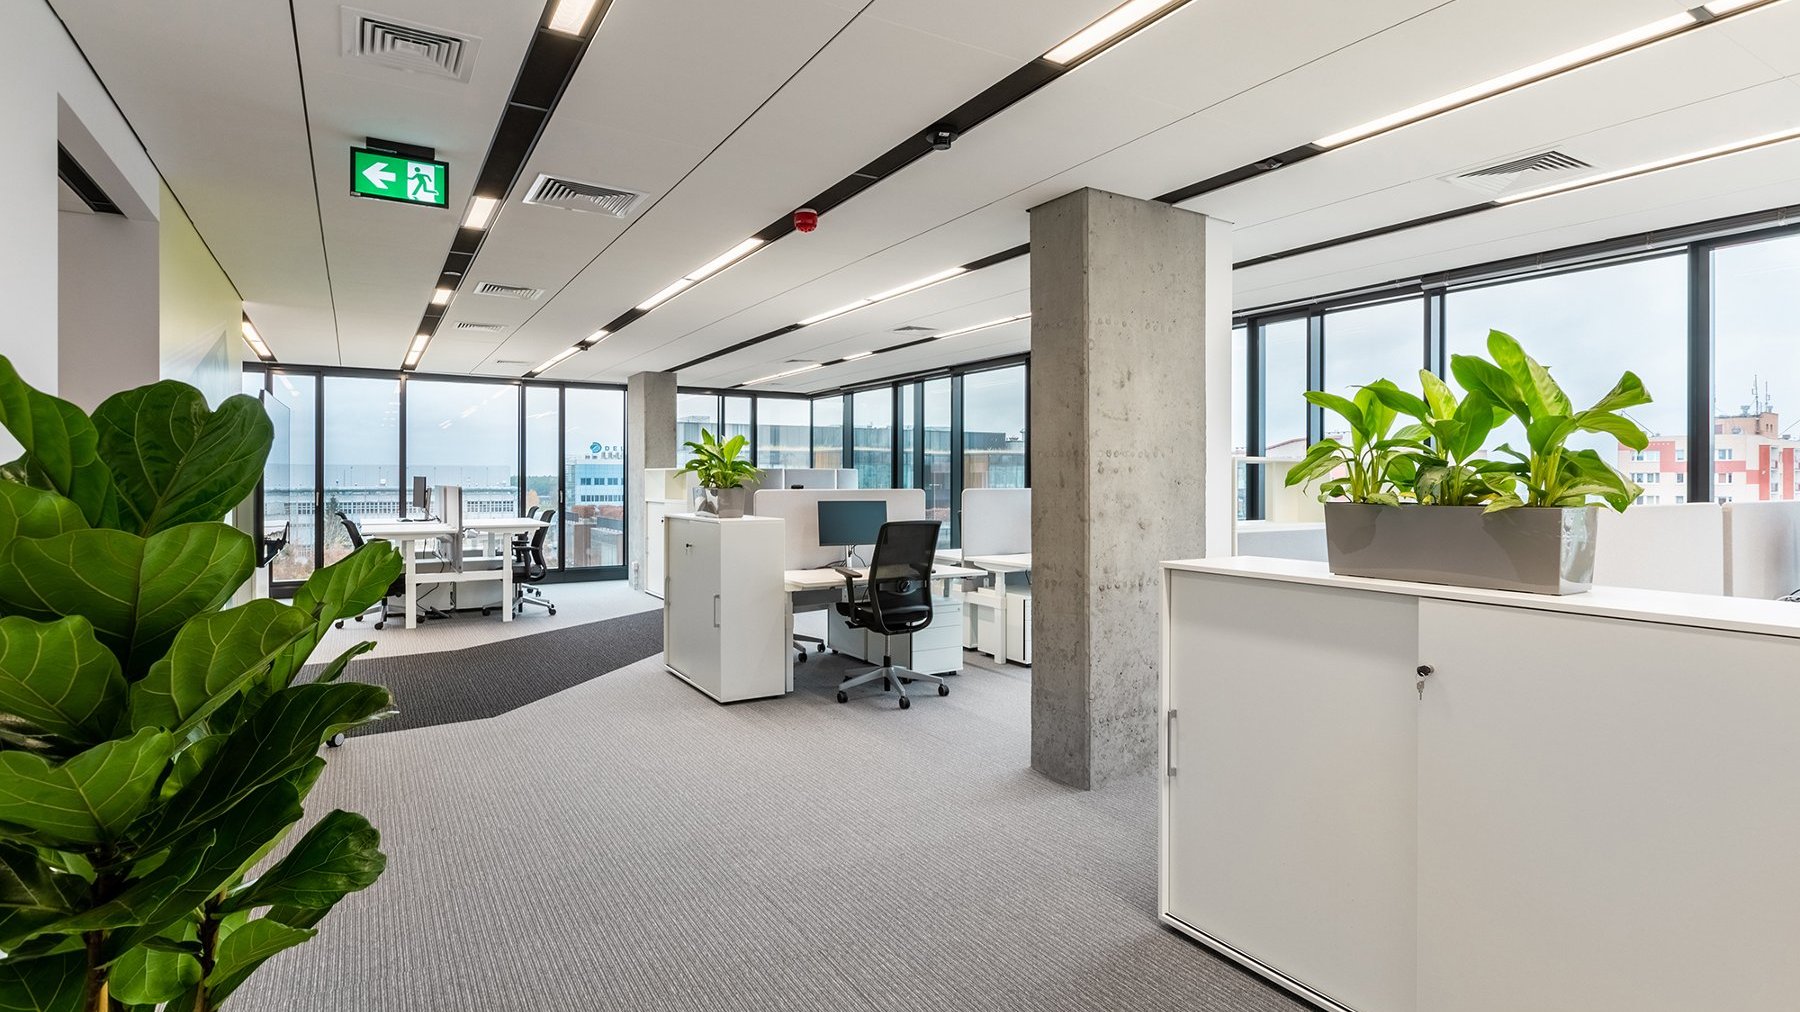 Zdjęcie przedstawia nowoczesną przestrzeń biurową. Przy biurkach z komputerami znajdują się zielone rośliny w szarych osłonkach. W tle widać rozpościerające się miasto.